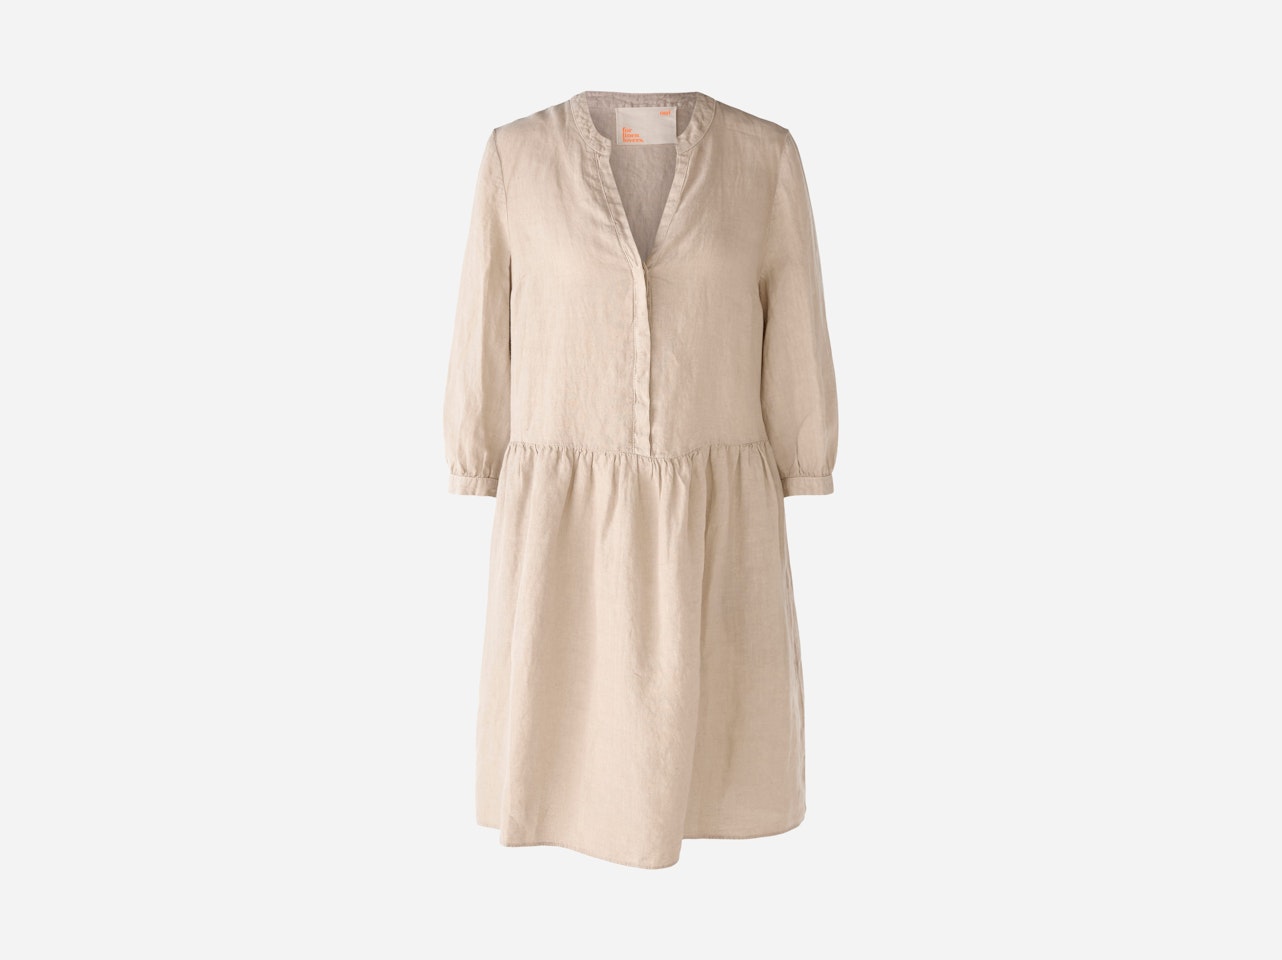 Bild 1 von Summer dress in natural dyed 100% linen in light stone | Oui